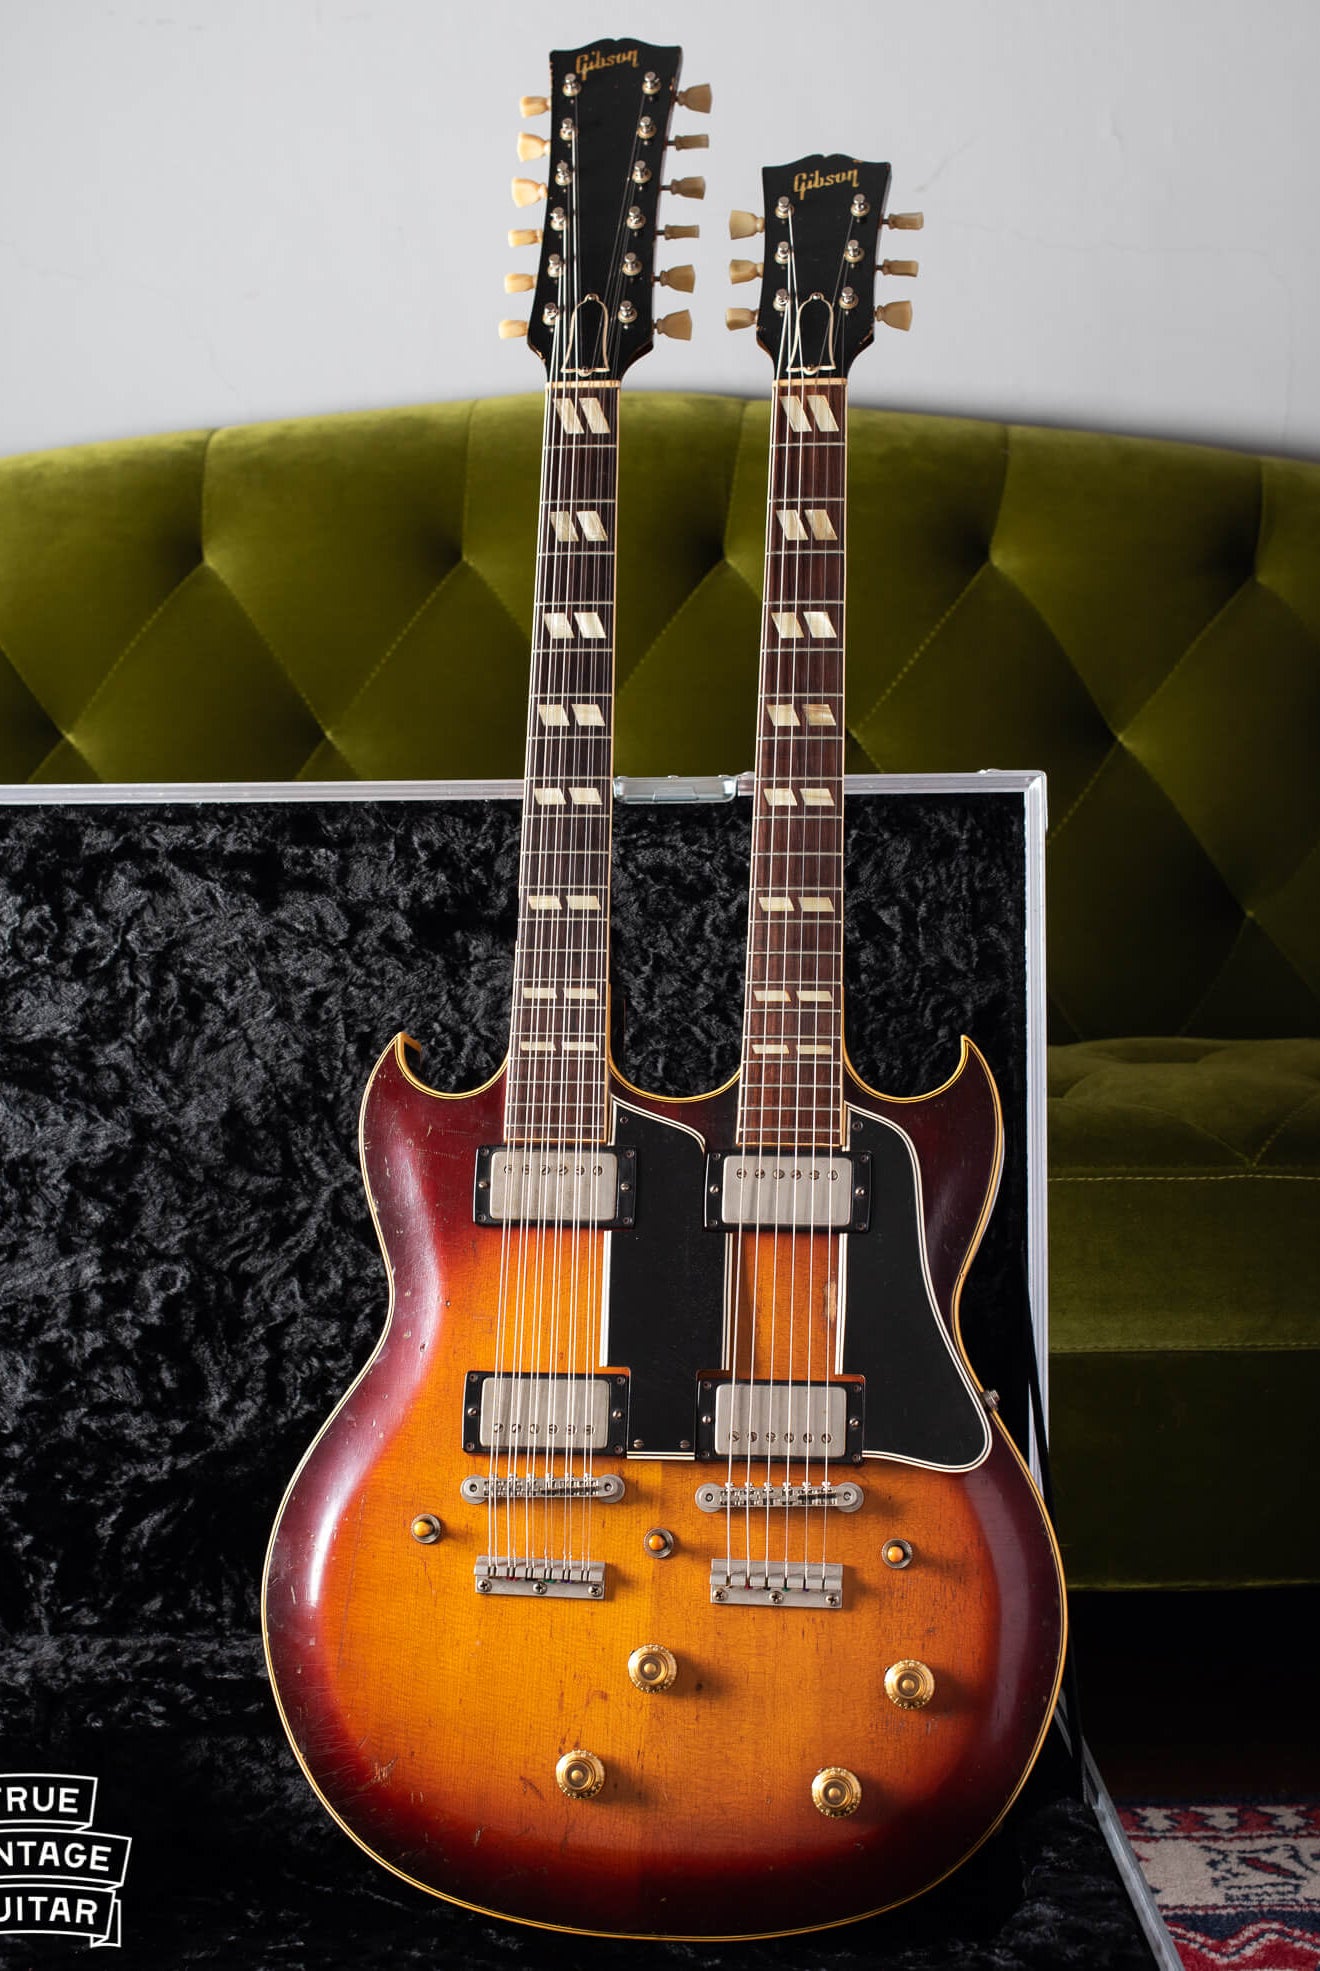 Gibson collector buys 1959 Gibson doubleneck guitar